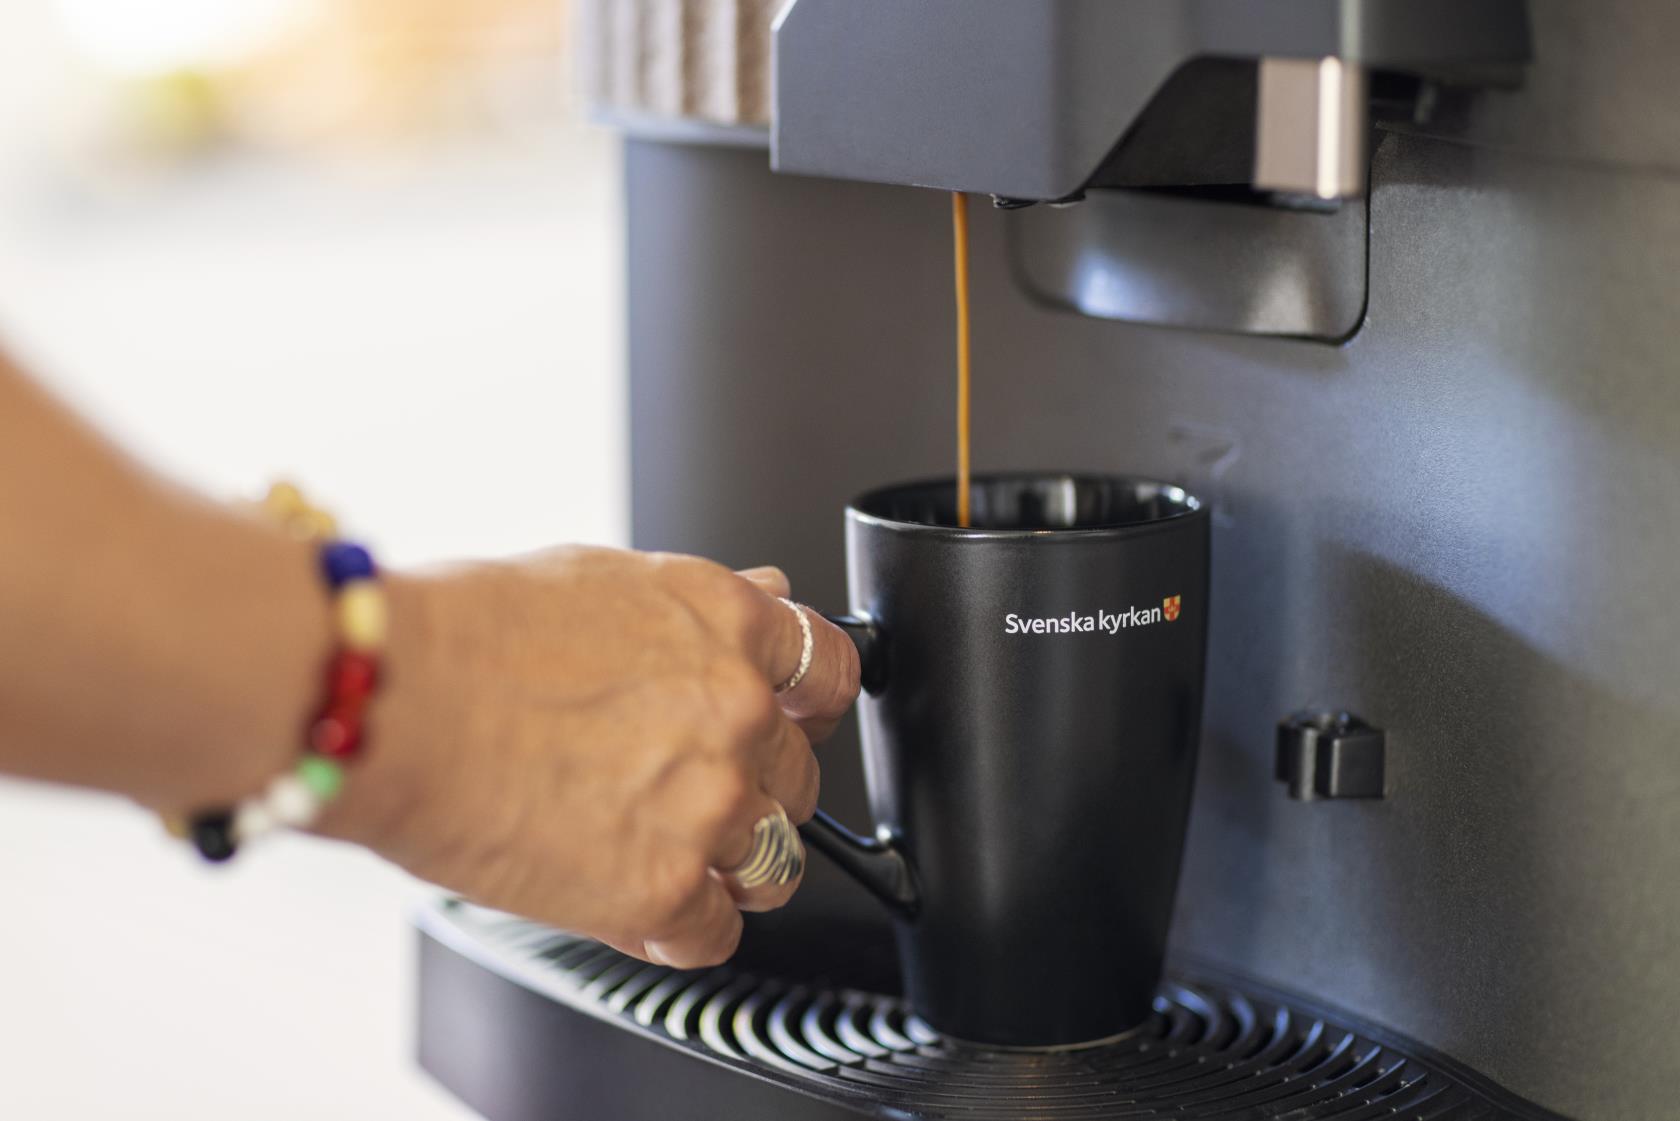 Någon tar kaffe från en kaffemaskin i en svart kopp med Svenska kyrkans logga.